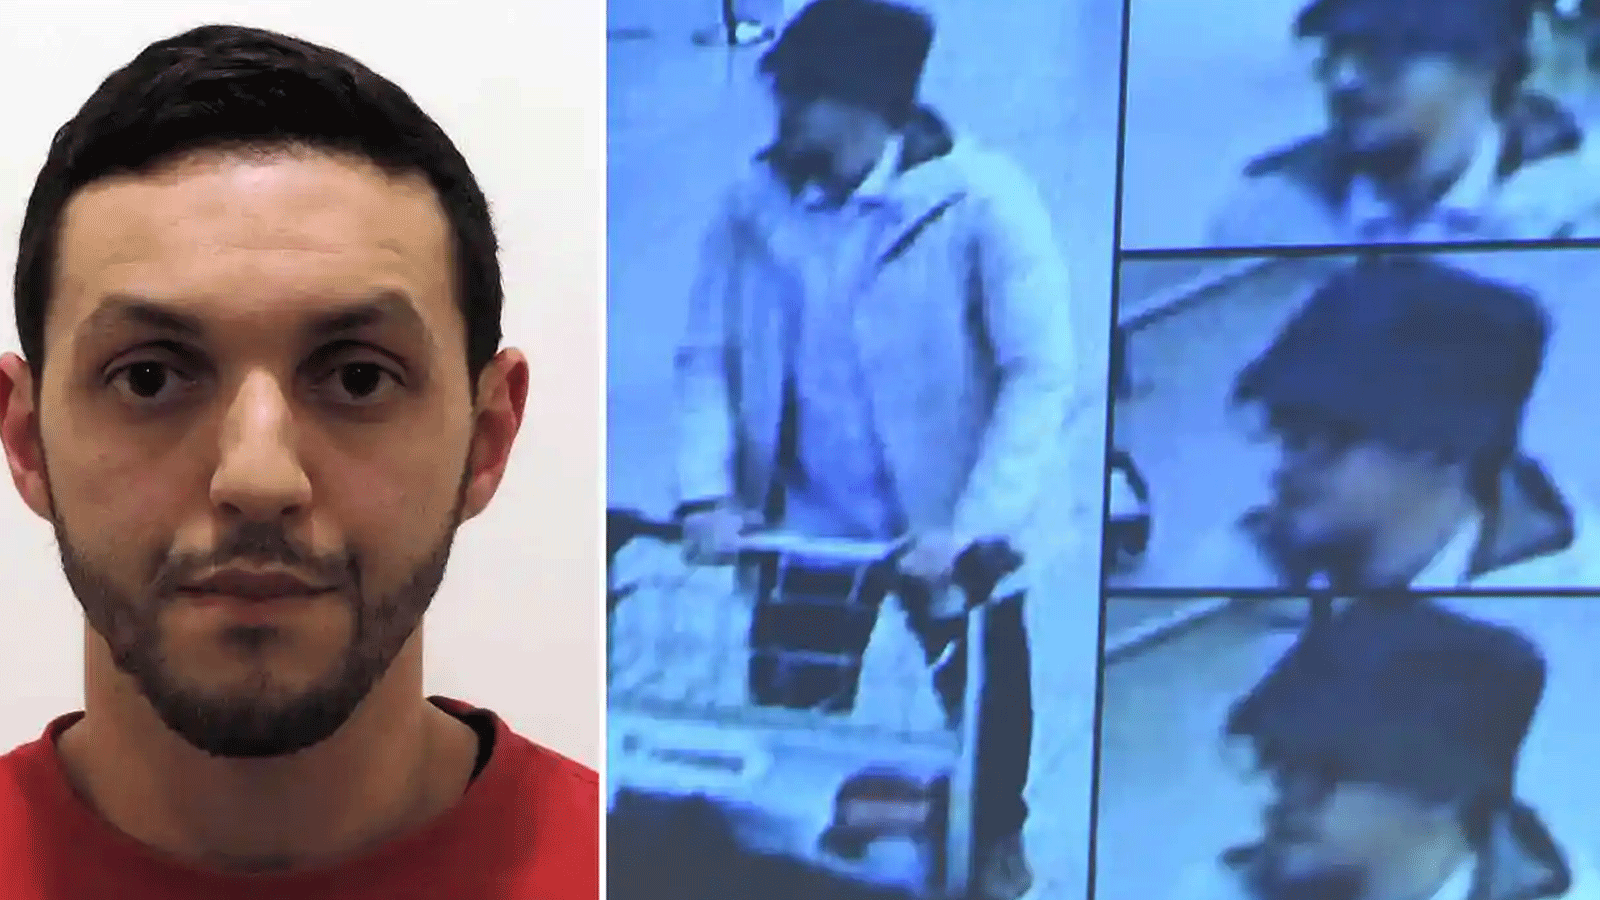 تم التعرف على محمد عبريني كأحد اثنين من المشتبه بهم الذين شوهدوا يسافرون بالسيارة إلى باريس، قبل يومين من الهجمات على العاصمة الفرنسية.